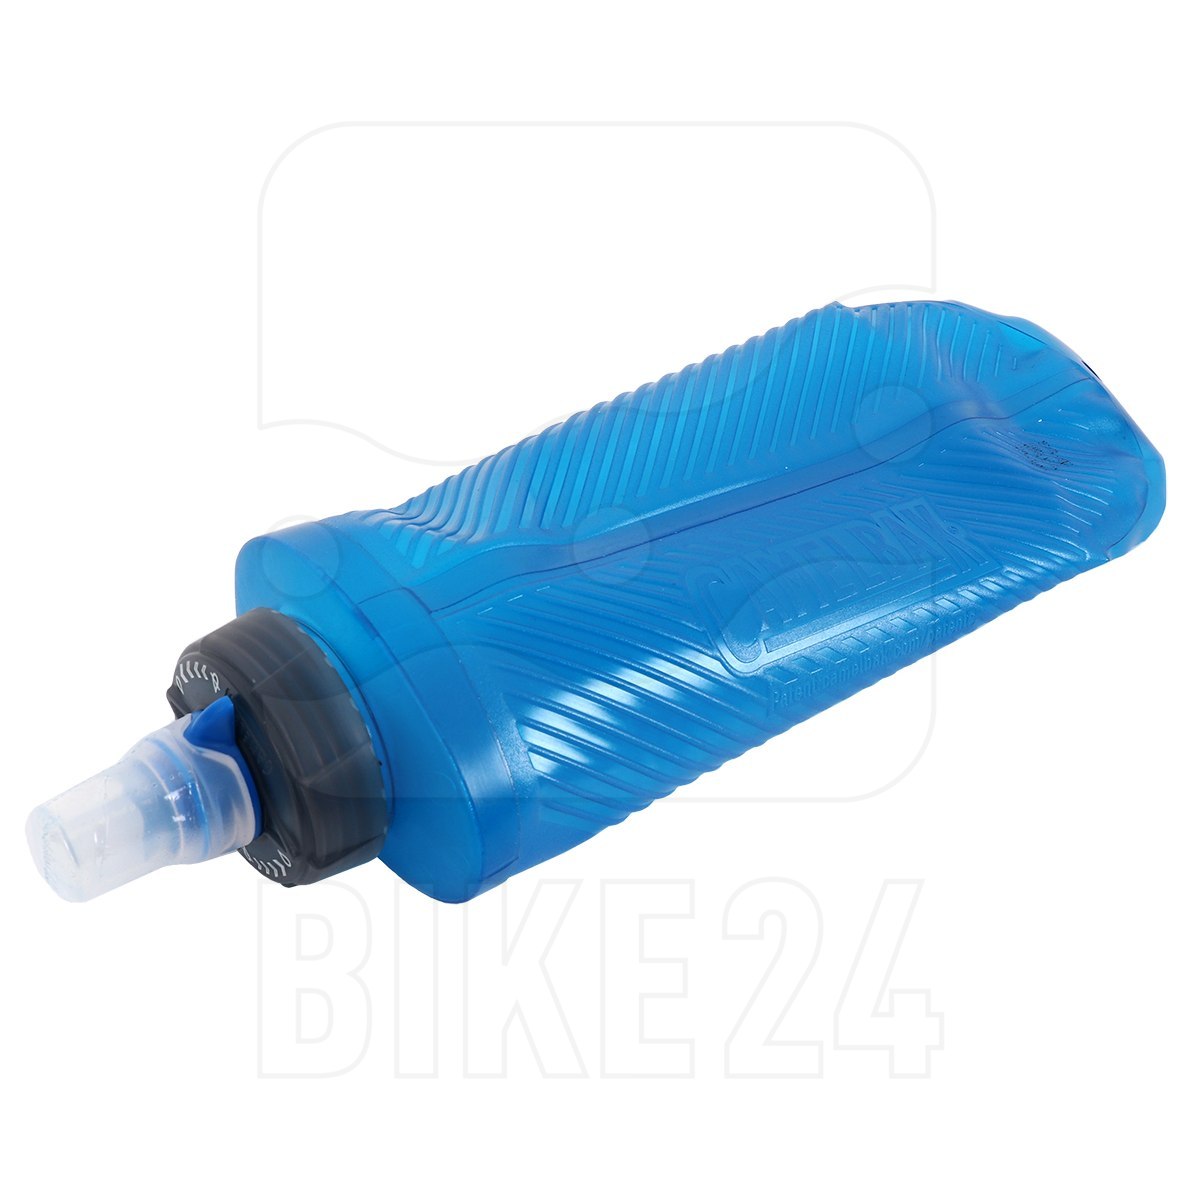 Produktbild von CamelBak Quick Stow Flask Trinkflasche 500ml - Blue